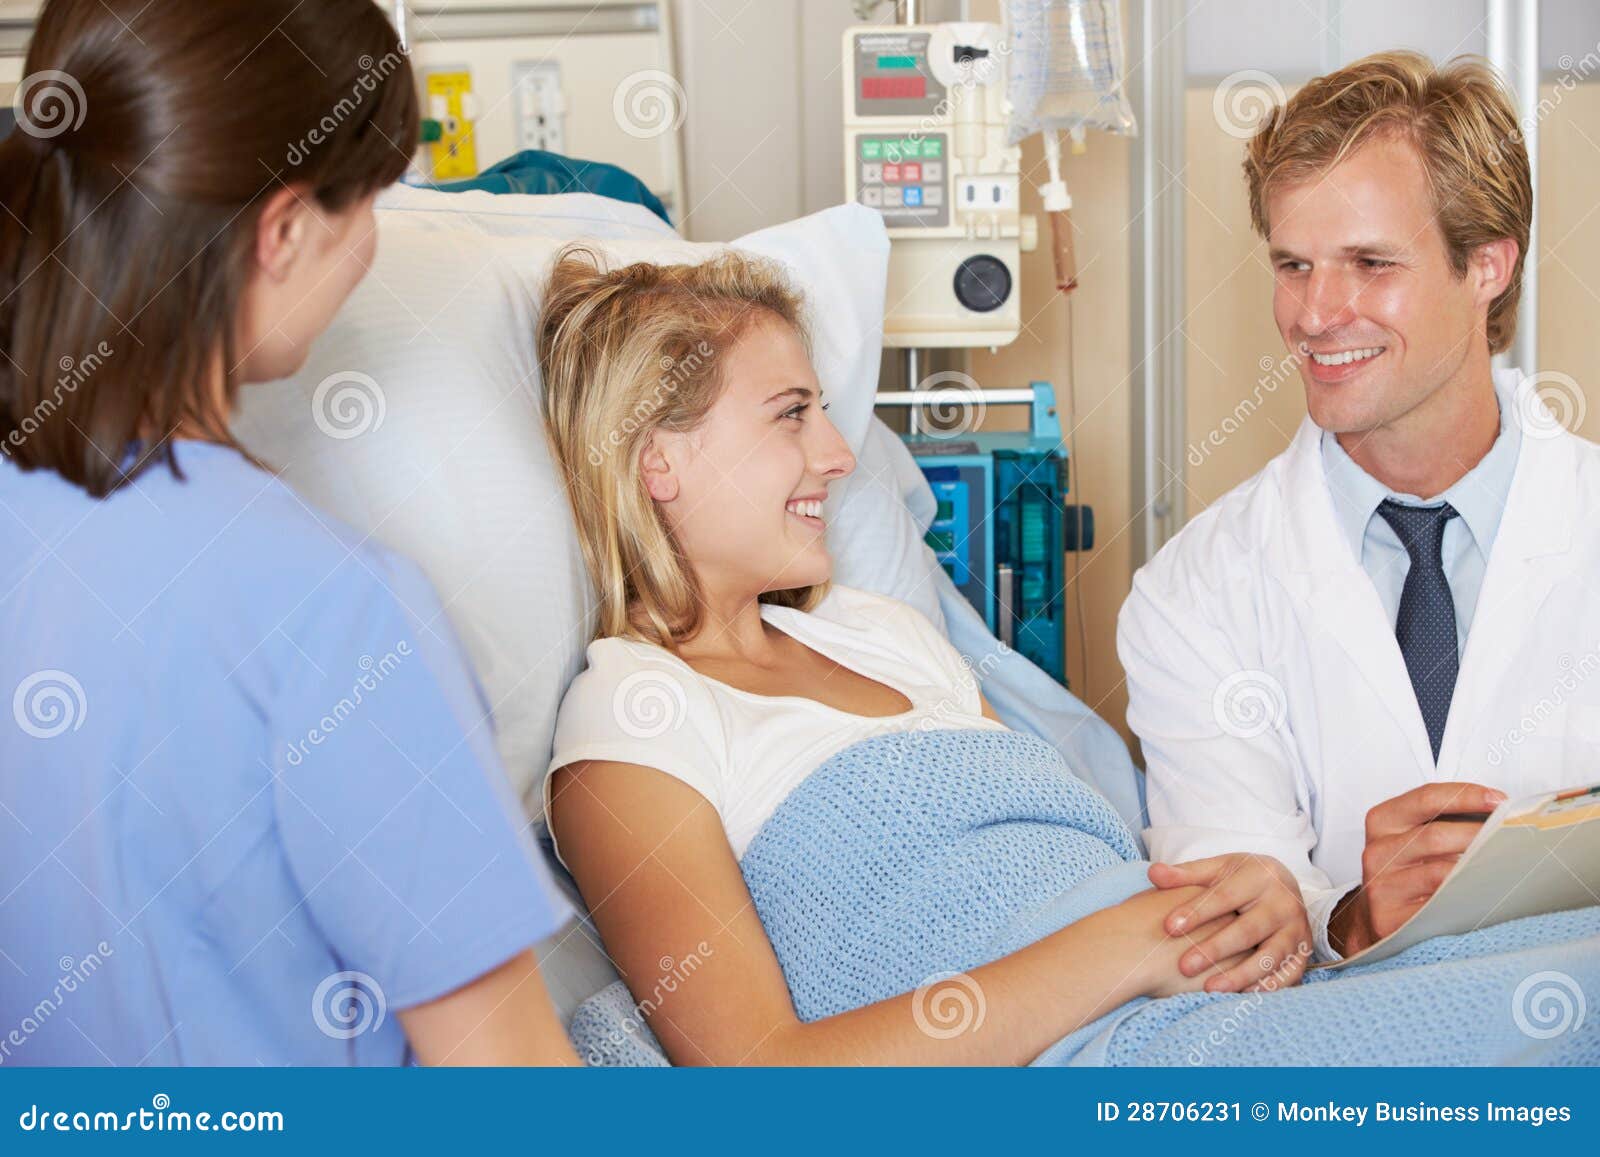 Гинеколог обращается к молодой пациентке. Влюбленные медики. Молодая пациентка. Медсестра беседует с молодой пациенткой. Больные разговорились фото.